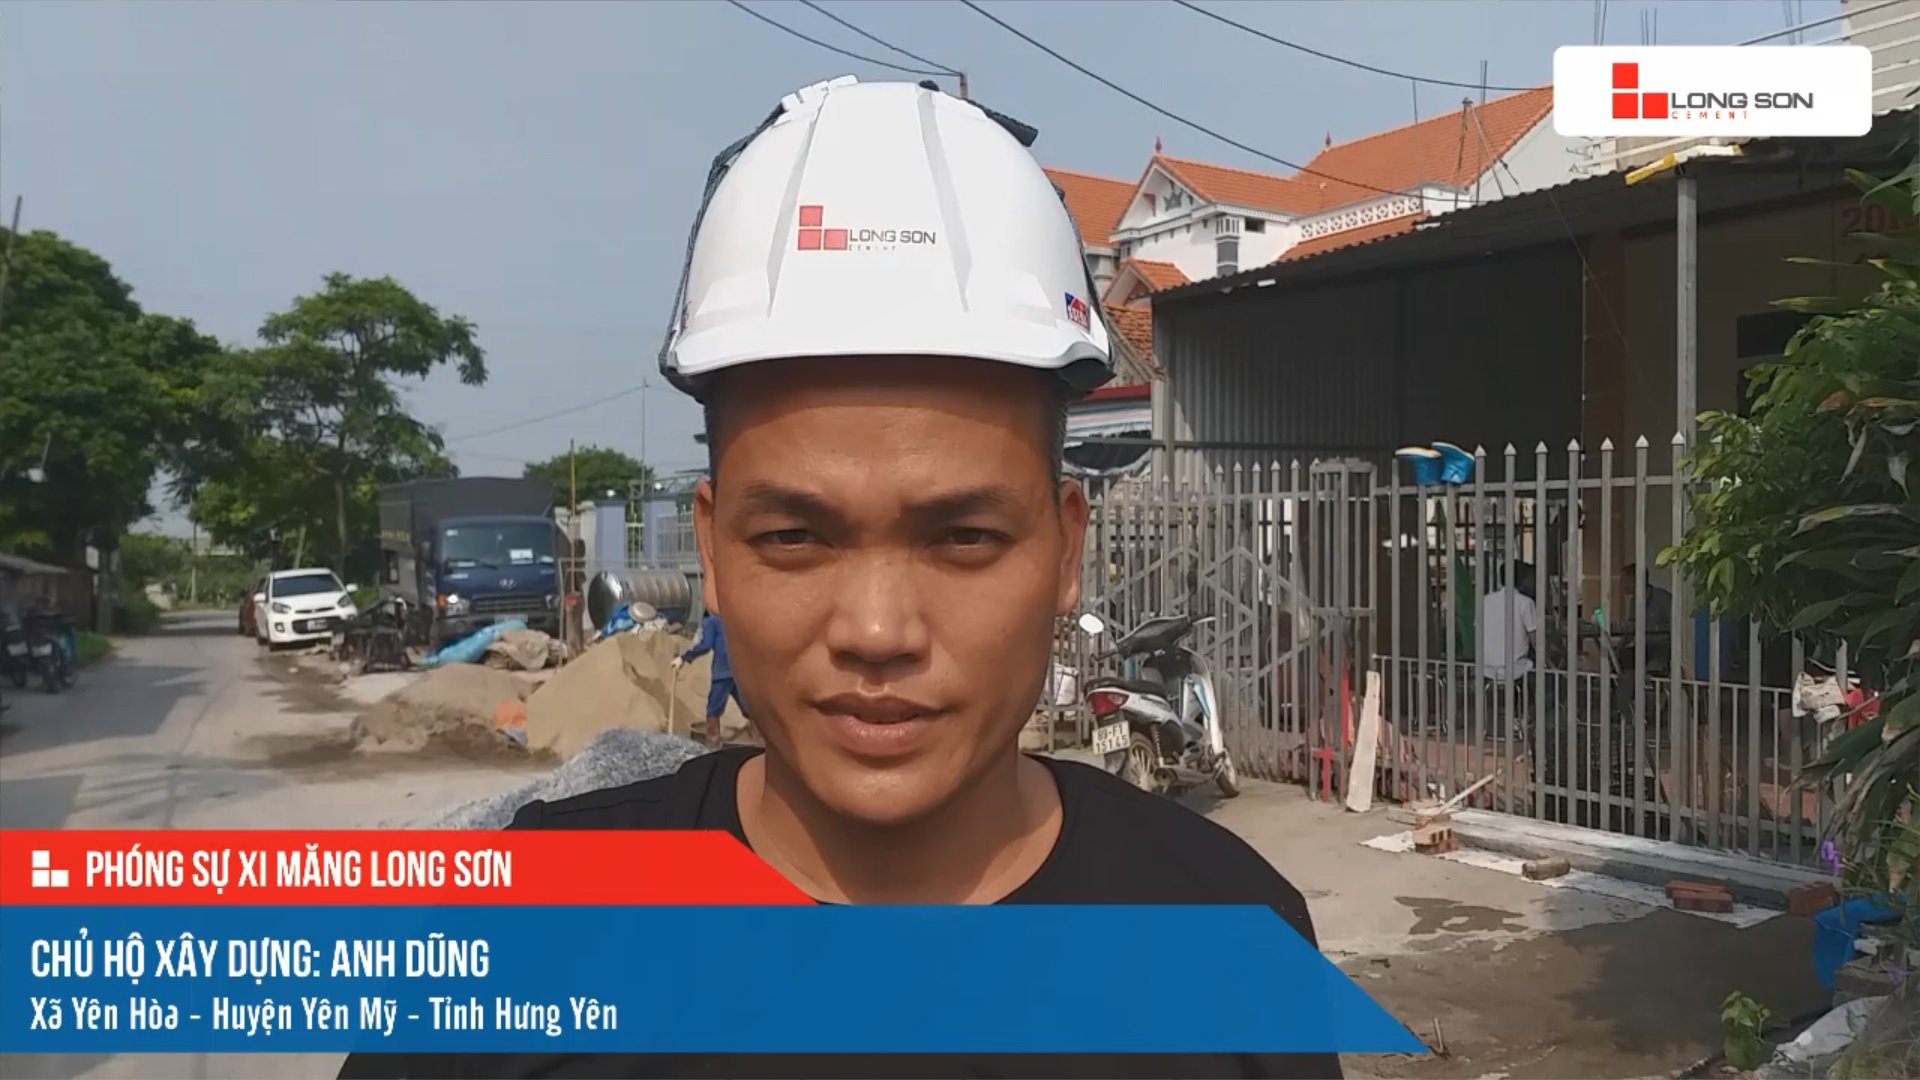 Phóng sự công trình sử dụng xi măng Long Sơn tại Hưng Yên ngày 07/10/2021